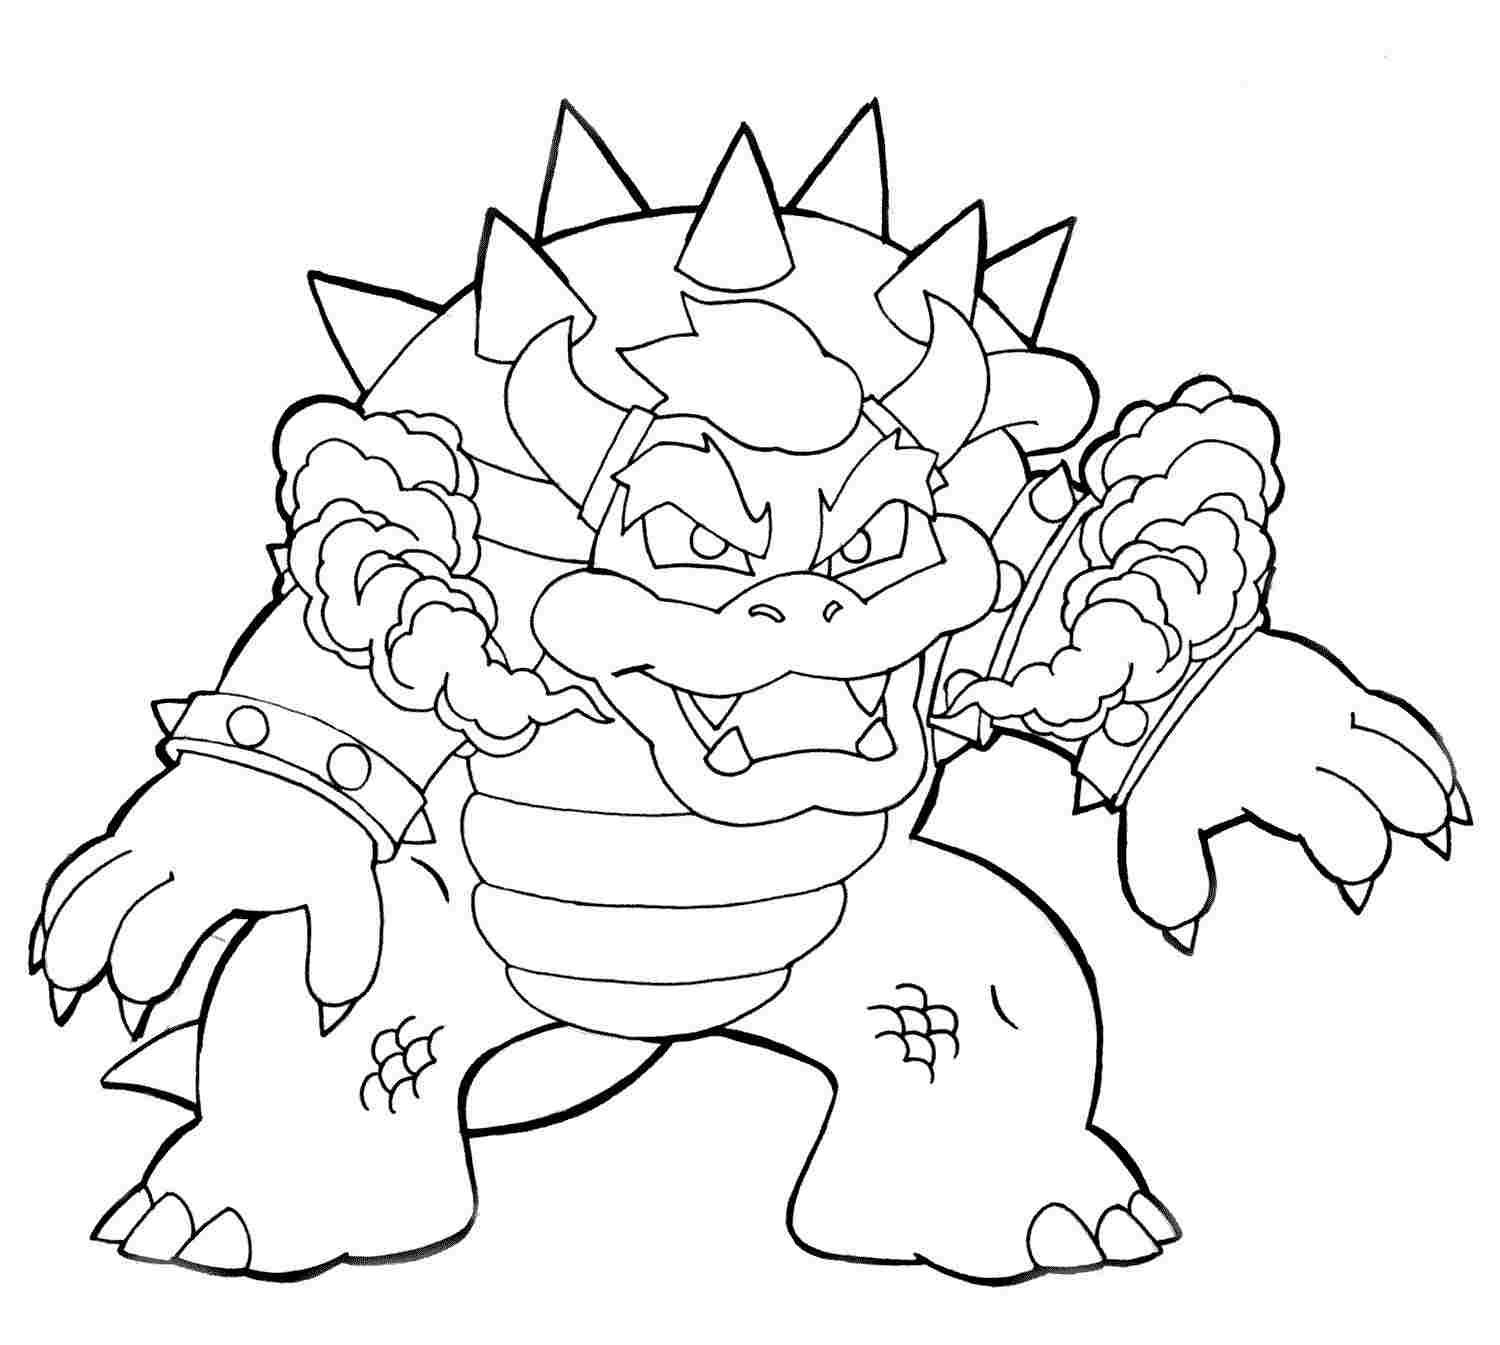 Desenho de Bowser Perigoso de Super Mario Bros para colorir